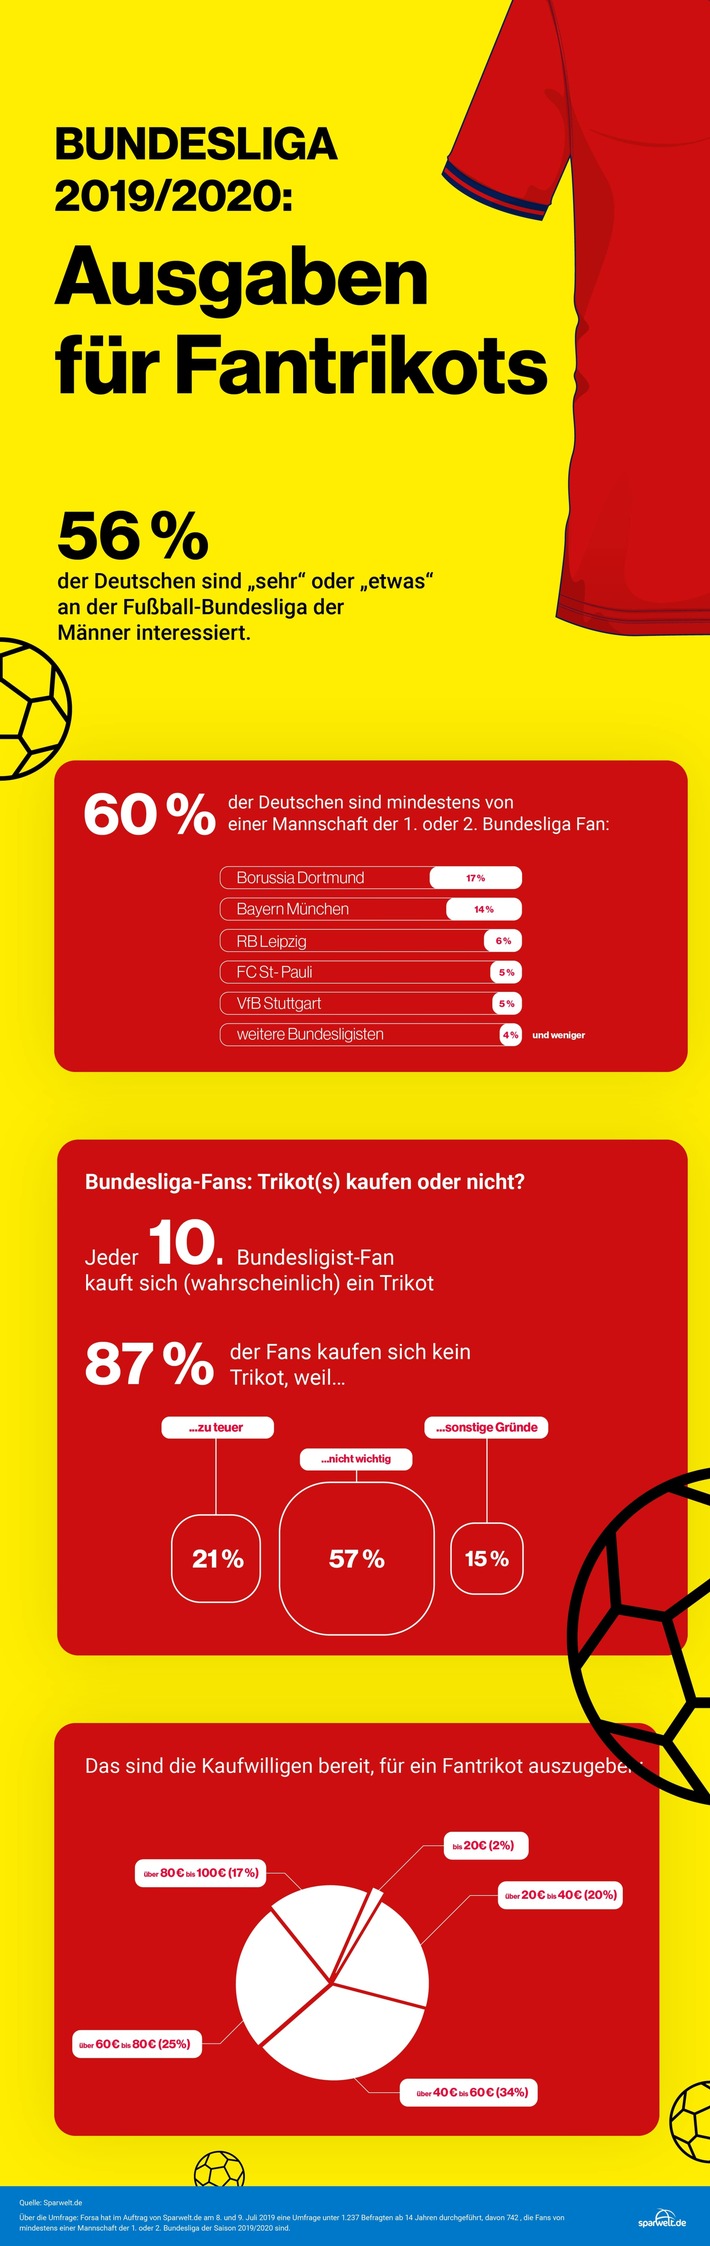 Forsa-Umfrage zur Bundesliga 2019/2020: Das geben die Deutschen für ihr Fan-Trikot aus